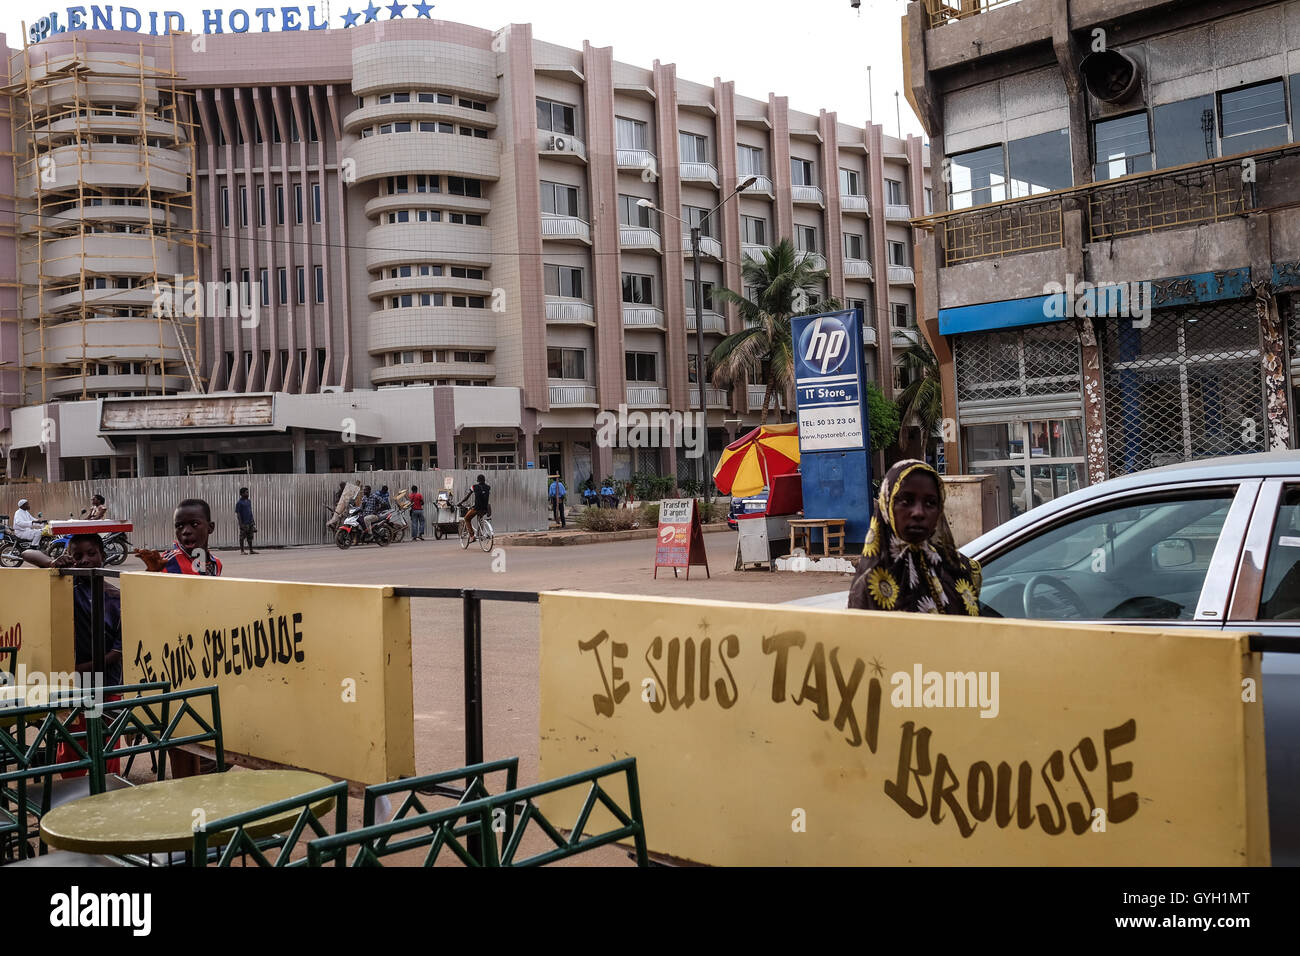 2 mesi dopo... Attacco terroristico a Ouaga nel cappuccino e splendido hotel. - 18/03/2016 - Burkina Faso / Ouagadougou - Ouagadougou, 18/03/2016 - 2 mesi dopo... l'attacco terroristico a Ouagadougou (Burkina Faso) nel cappuccino e splendido hotel che provocano 33 morti compresi i 3 attaccanti, testimonianze dell'attacco sono ancora visibili macchia + Taxi Brousse © - Nicolas Remene / Le Pictorium Foto Stock